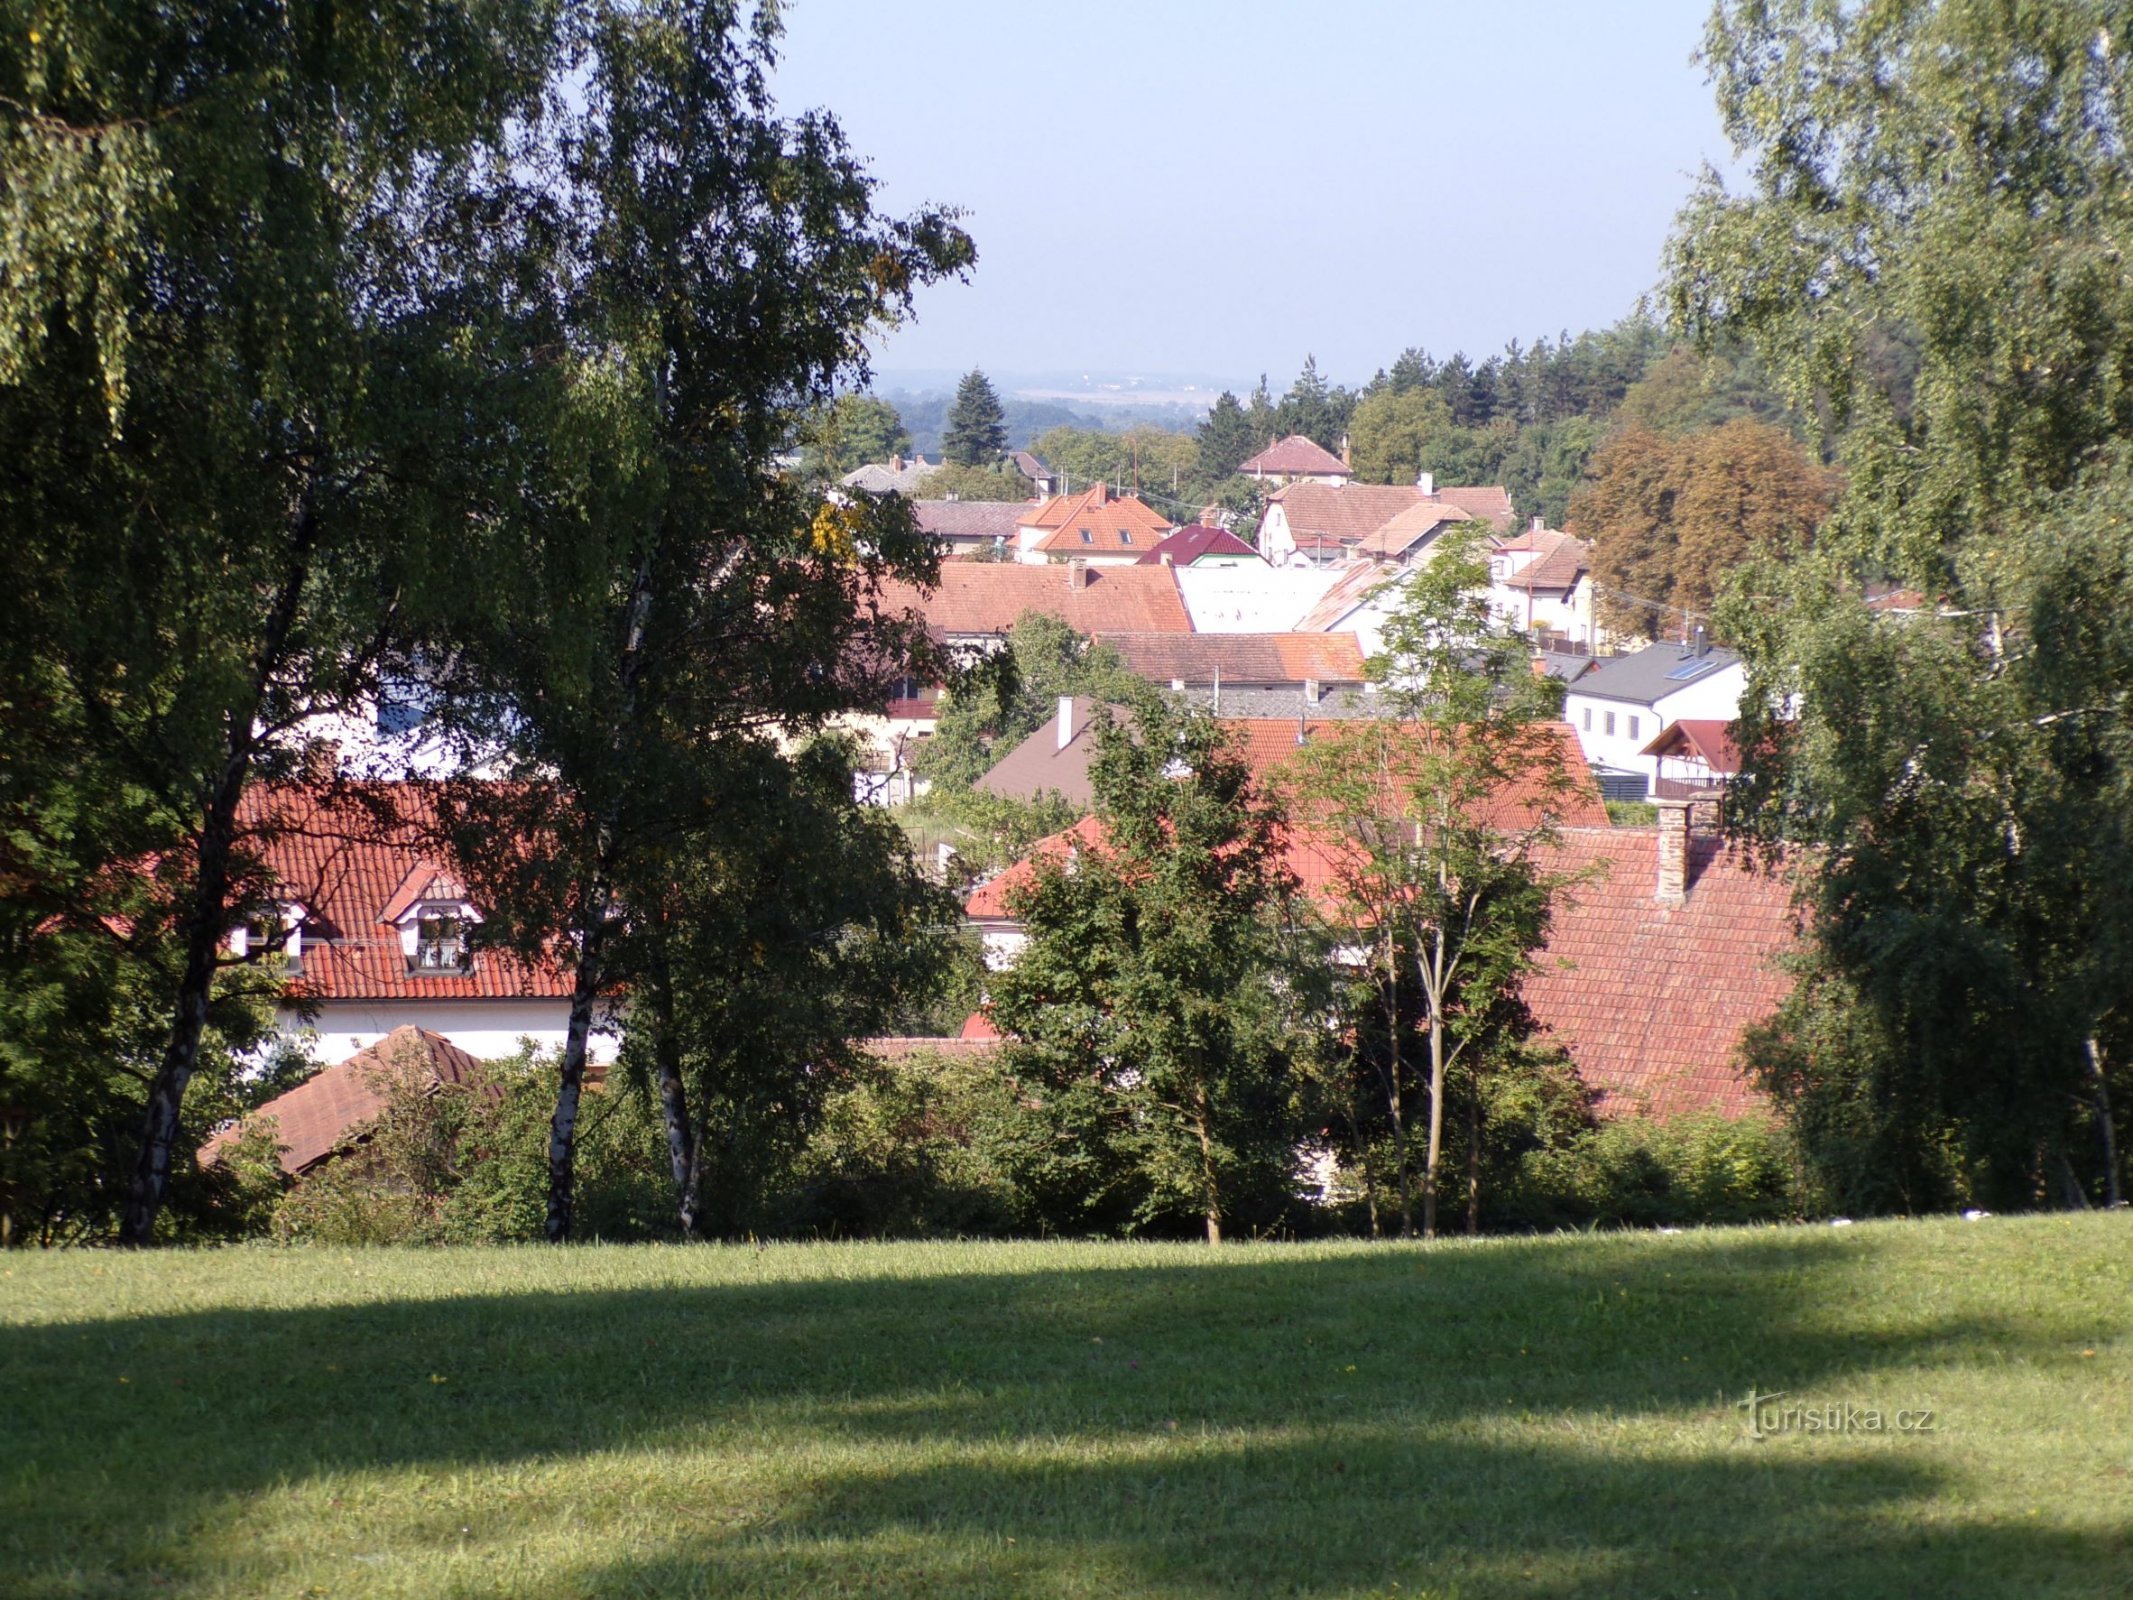 Vysoka nad Labem från nr 101 (3.9.2021 september XNUMX)